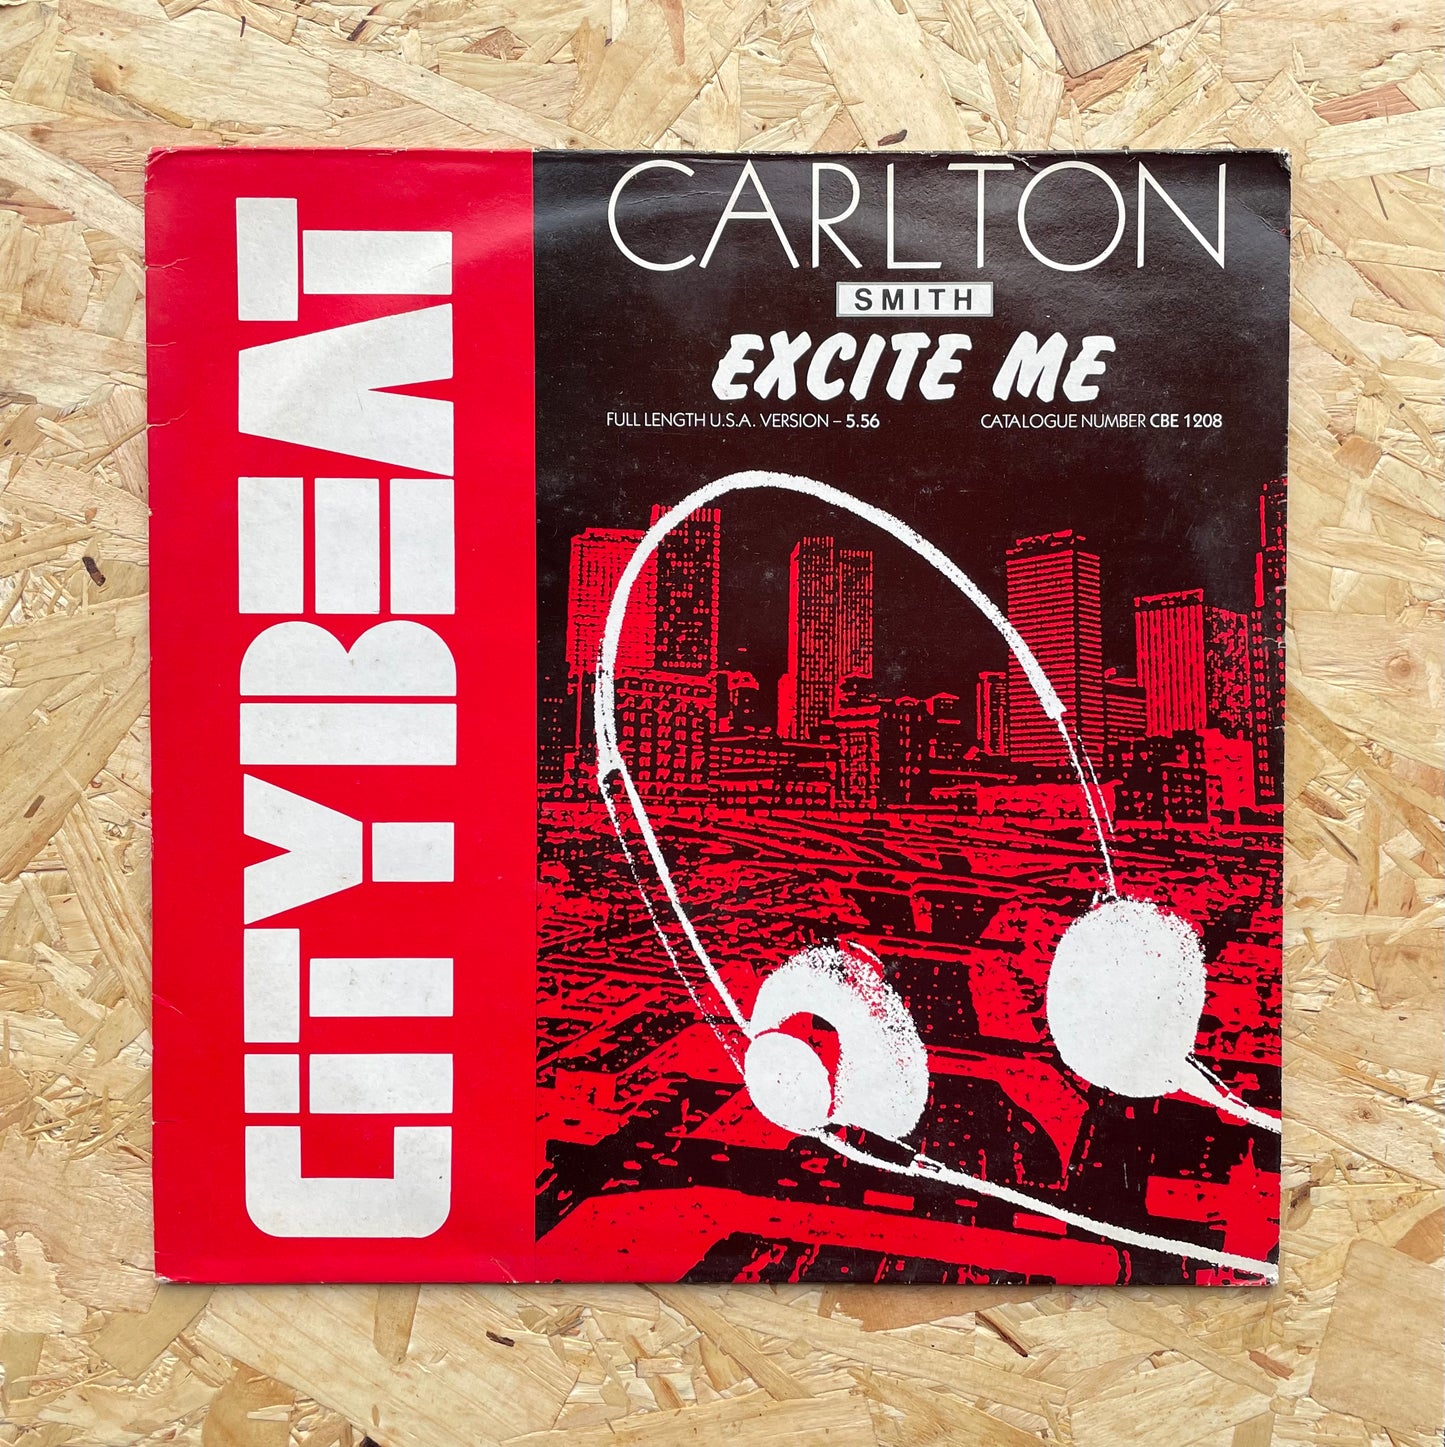 Carlton Smith – Excite Me